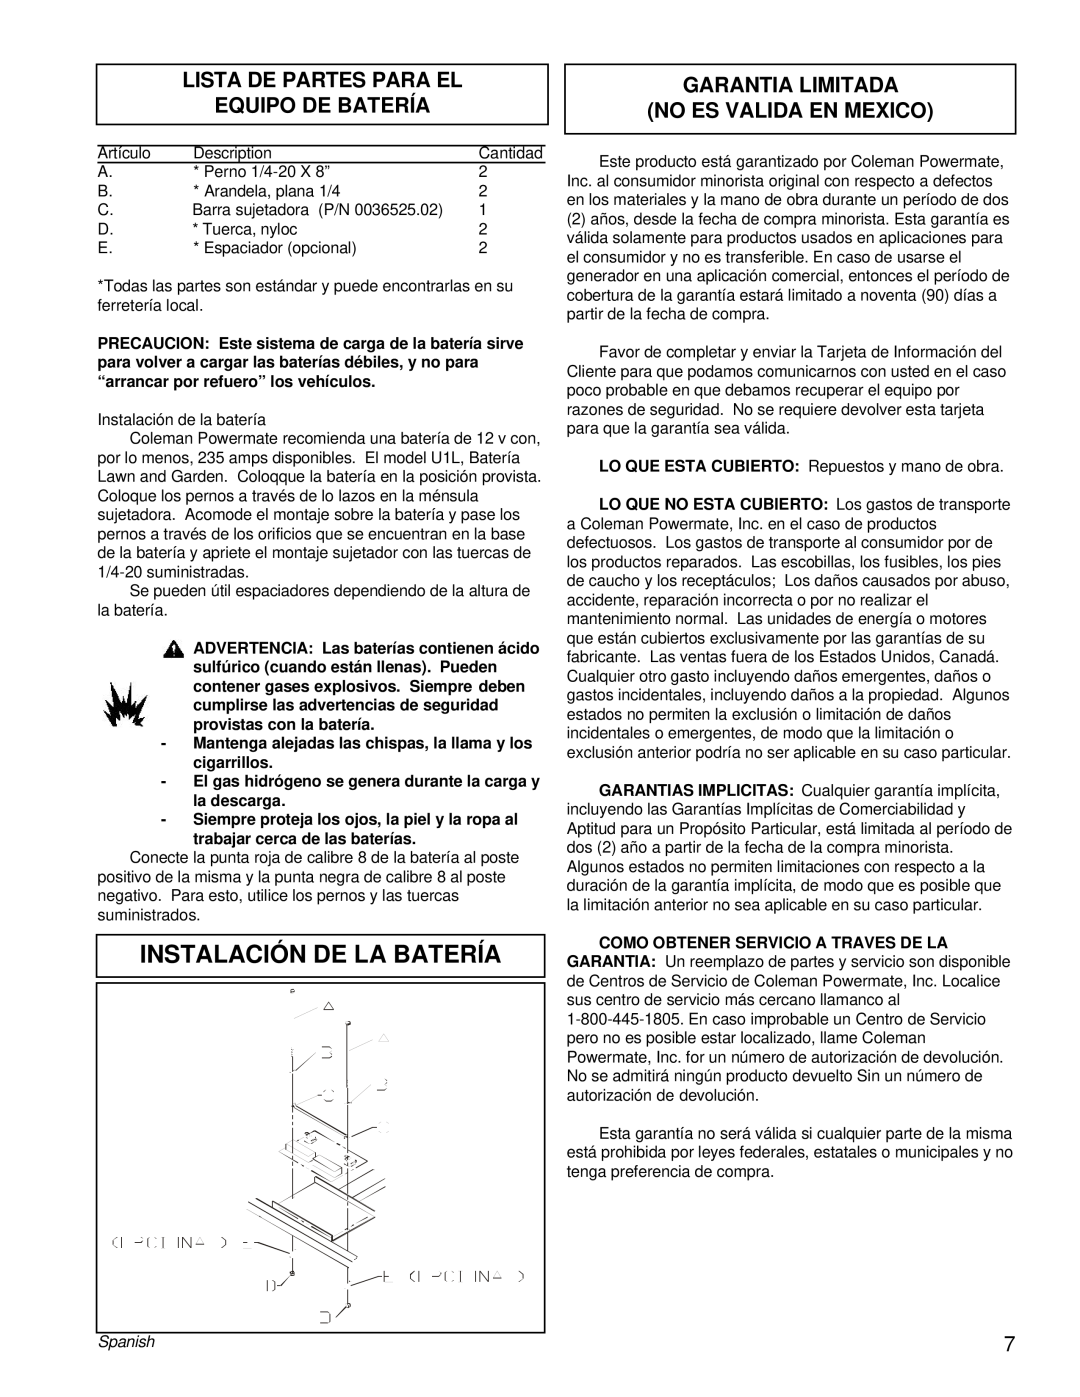 Powermate PM0505622.18 manual Instalación De La Batería, Lista De Partes Para El Equipo De Batería, Spanish 